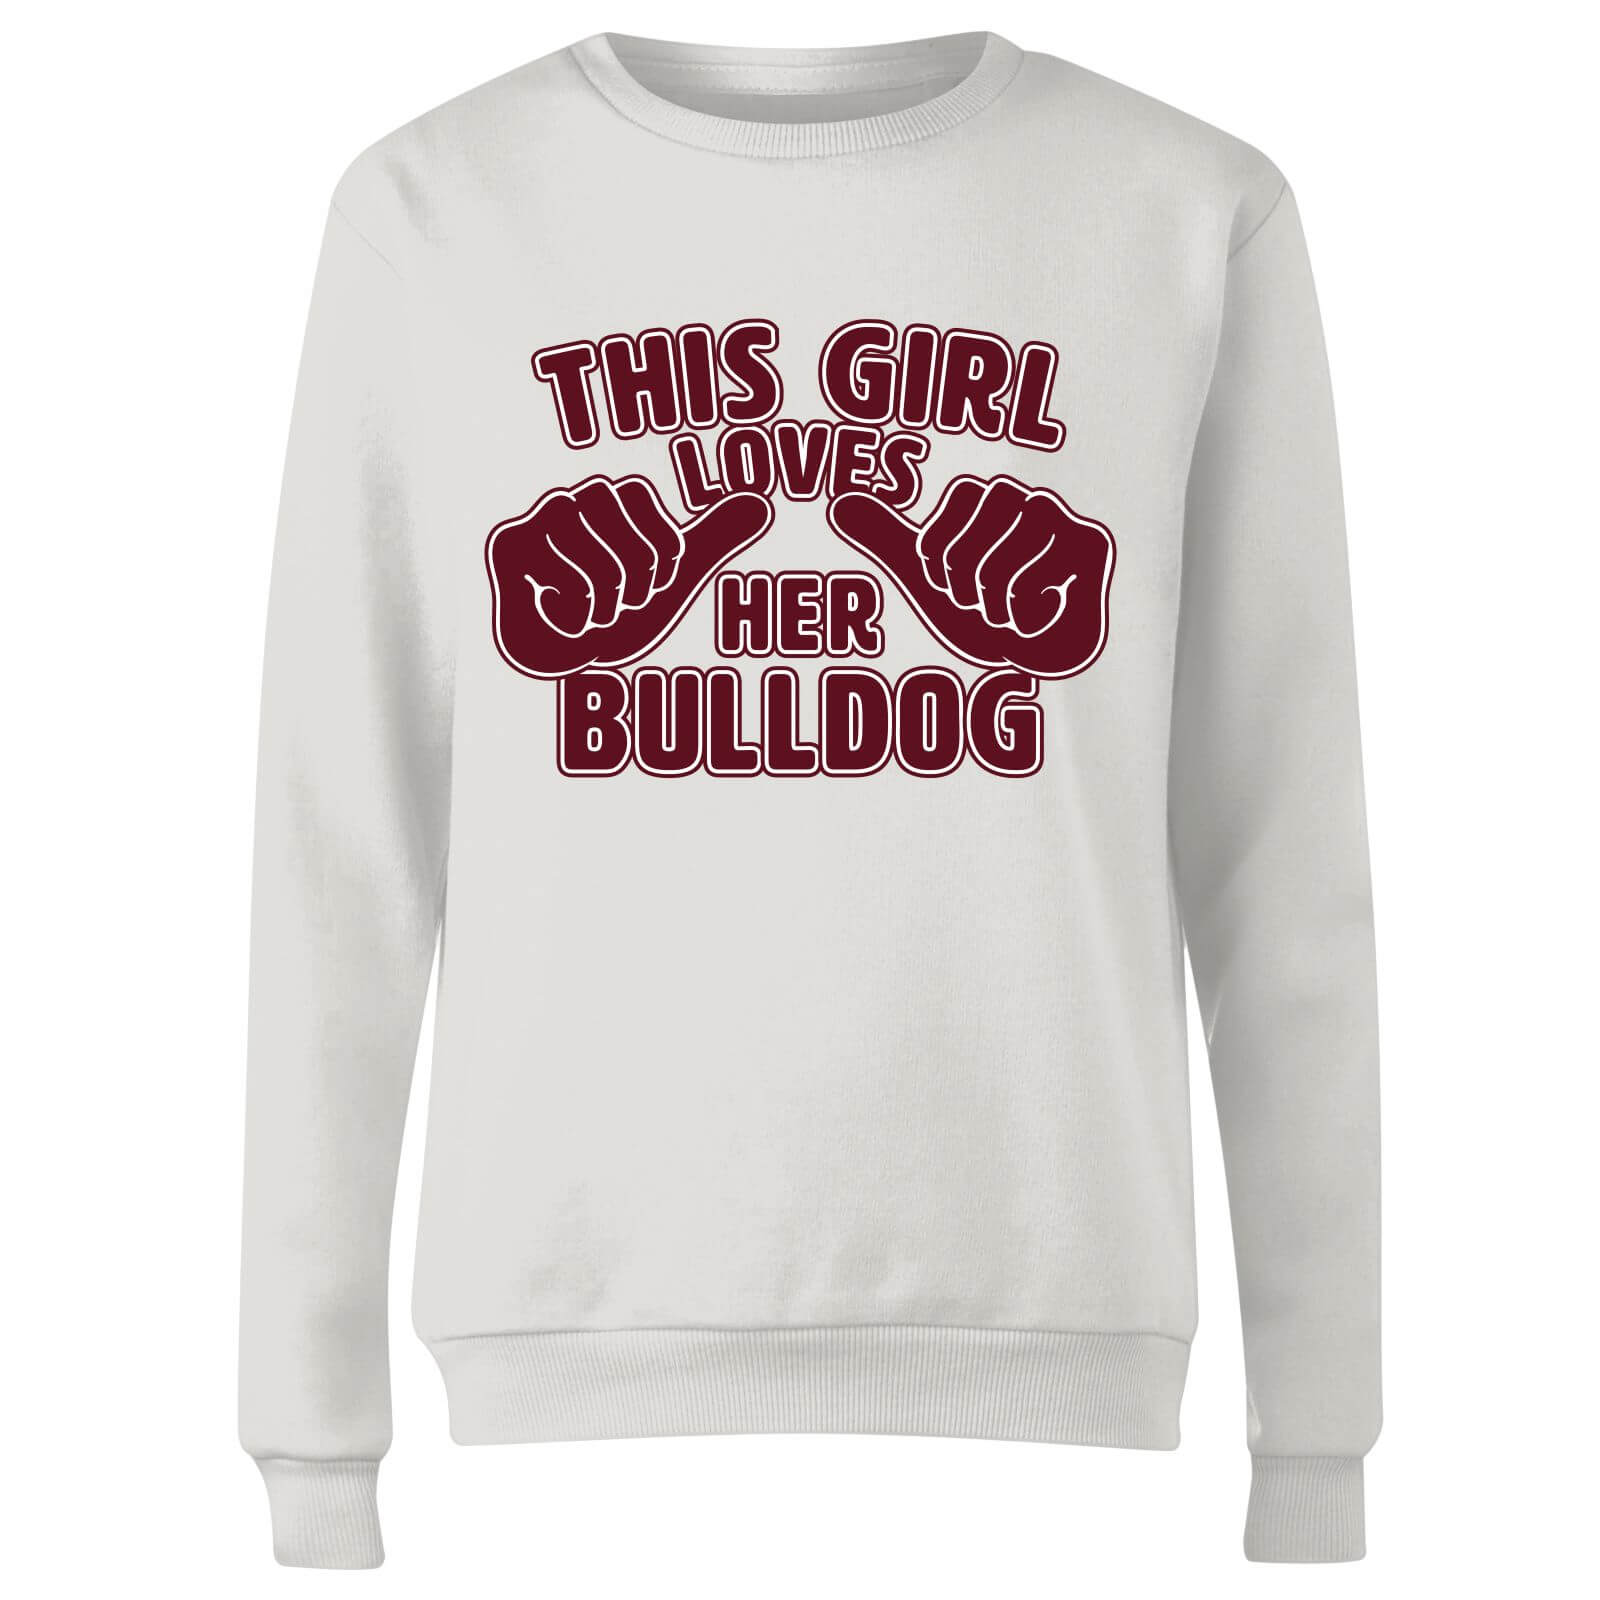 This Girl Loves Her Bulldog Women's Sweatshirt - White - XXL - White